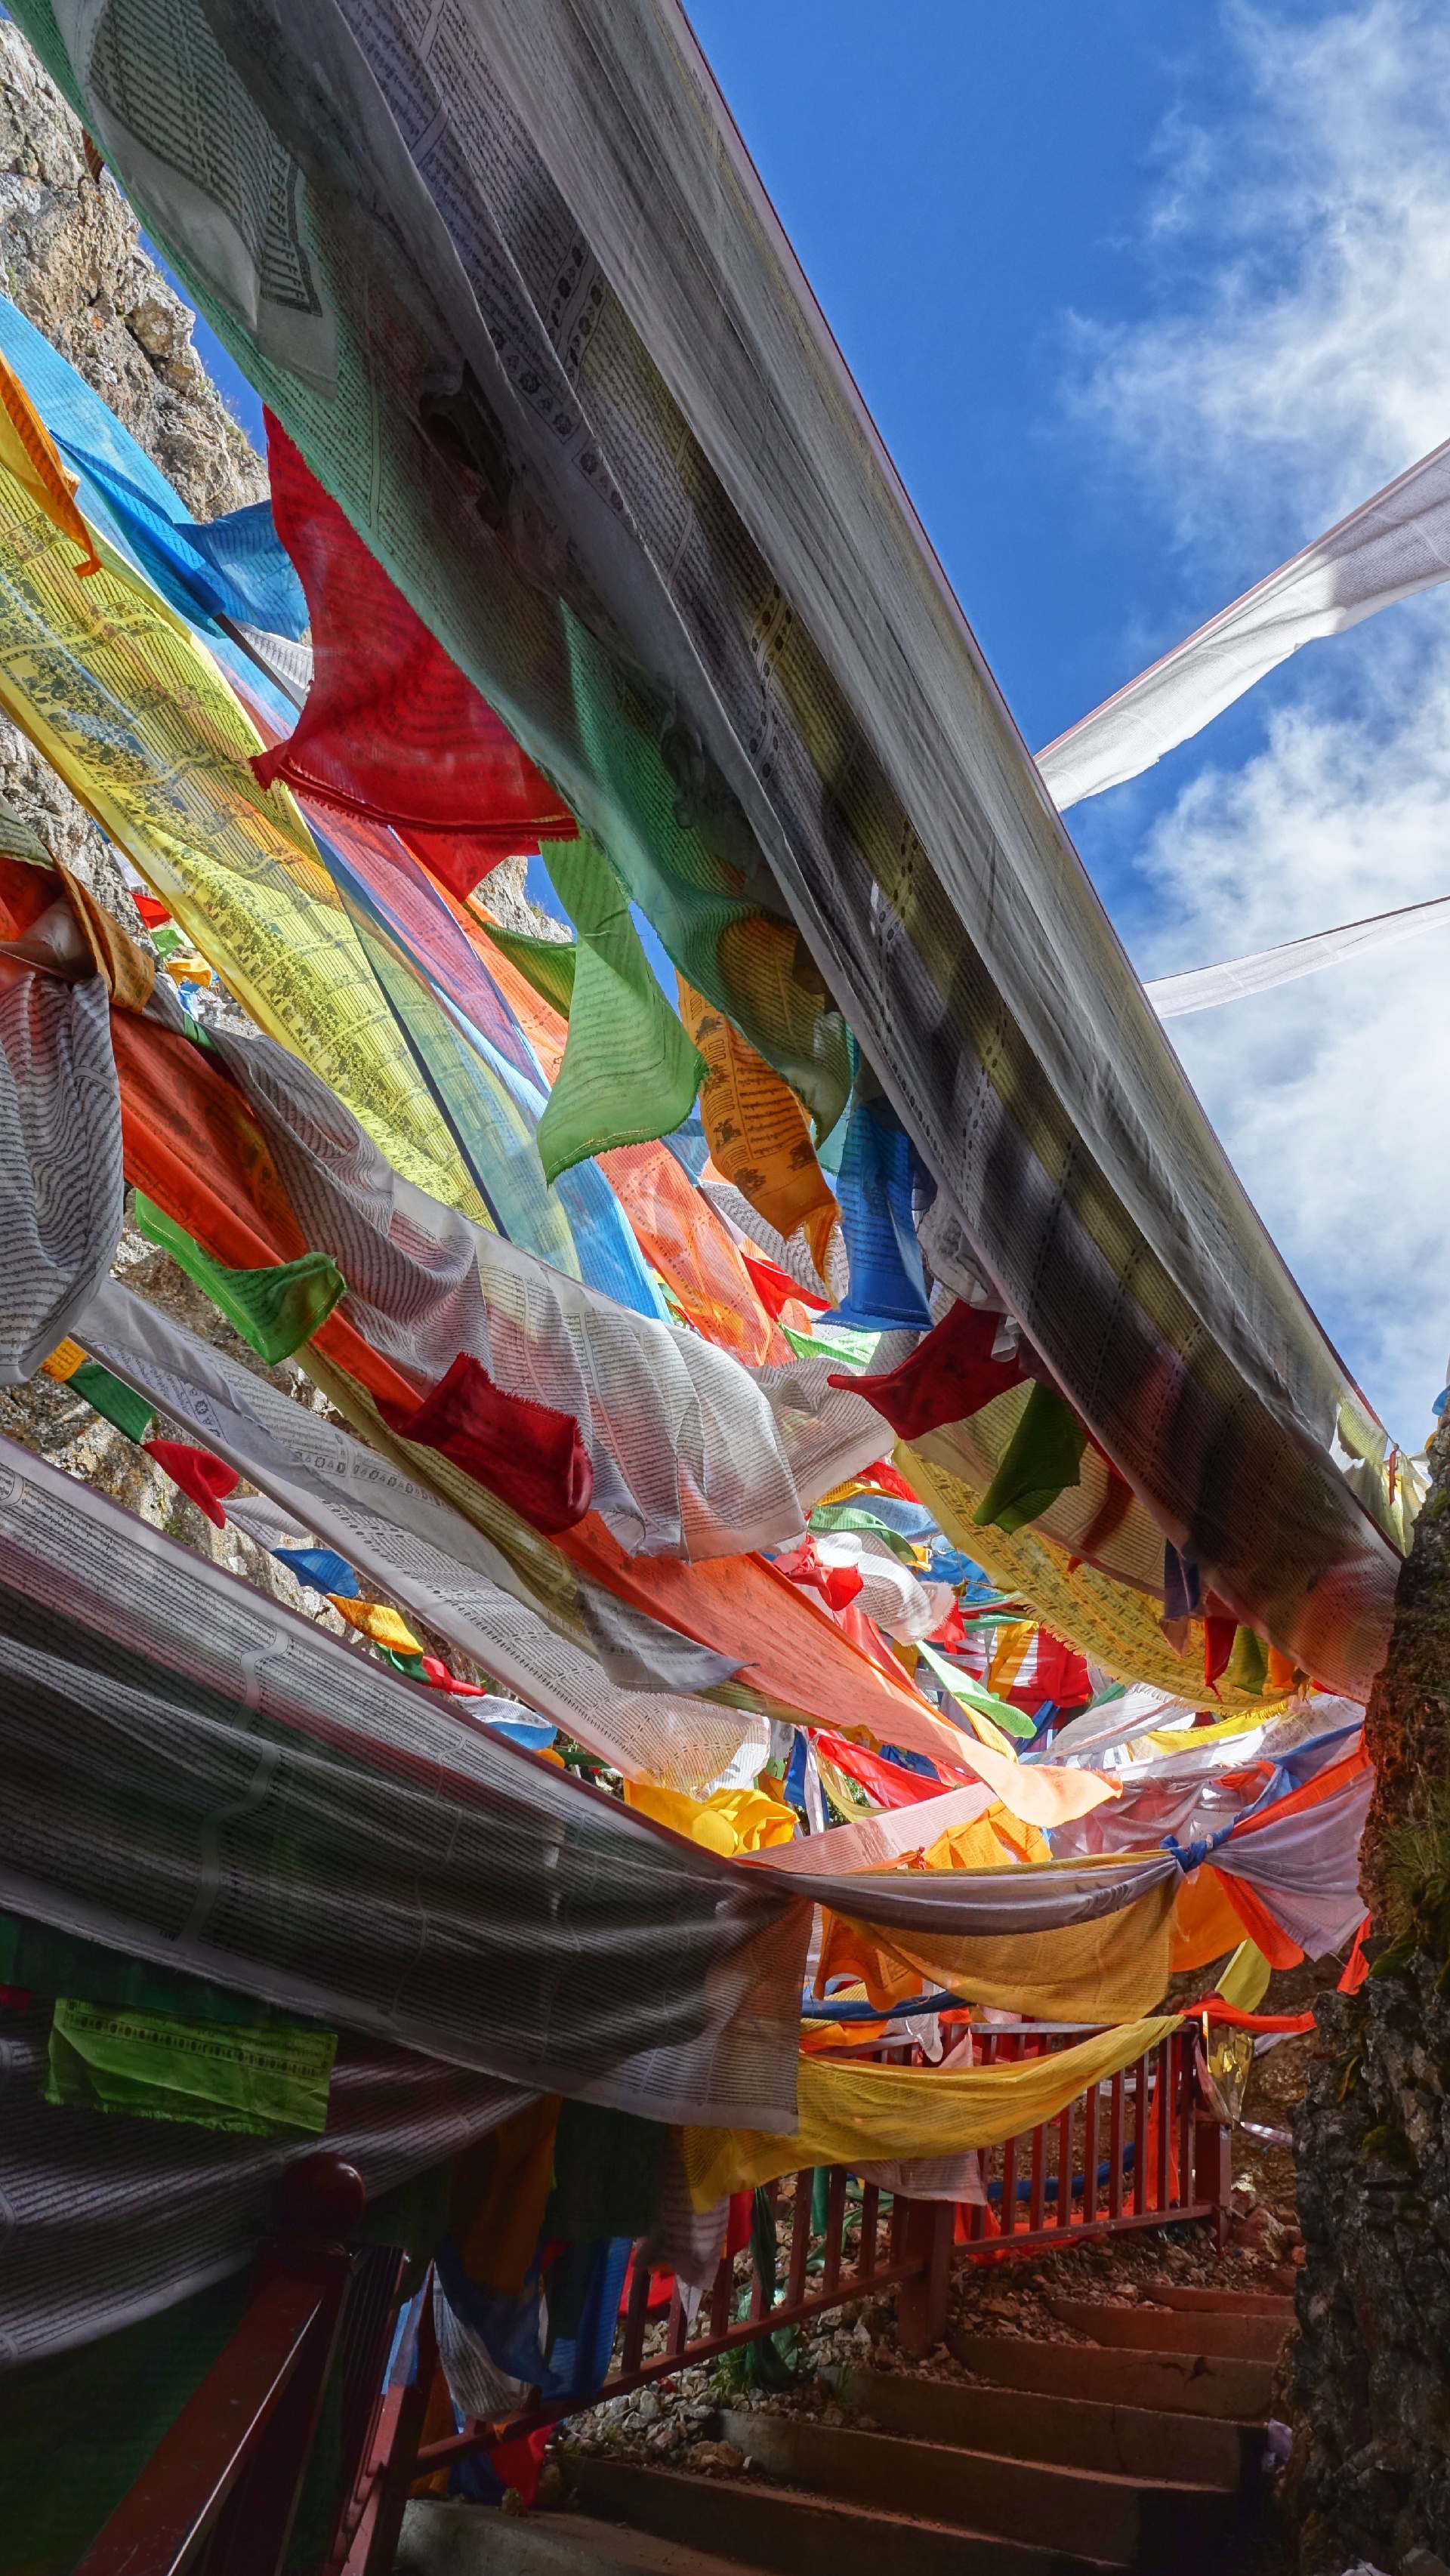 2020年9月自驾孜珠寺-西藏海拔最高的寺院之一